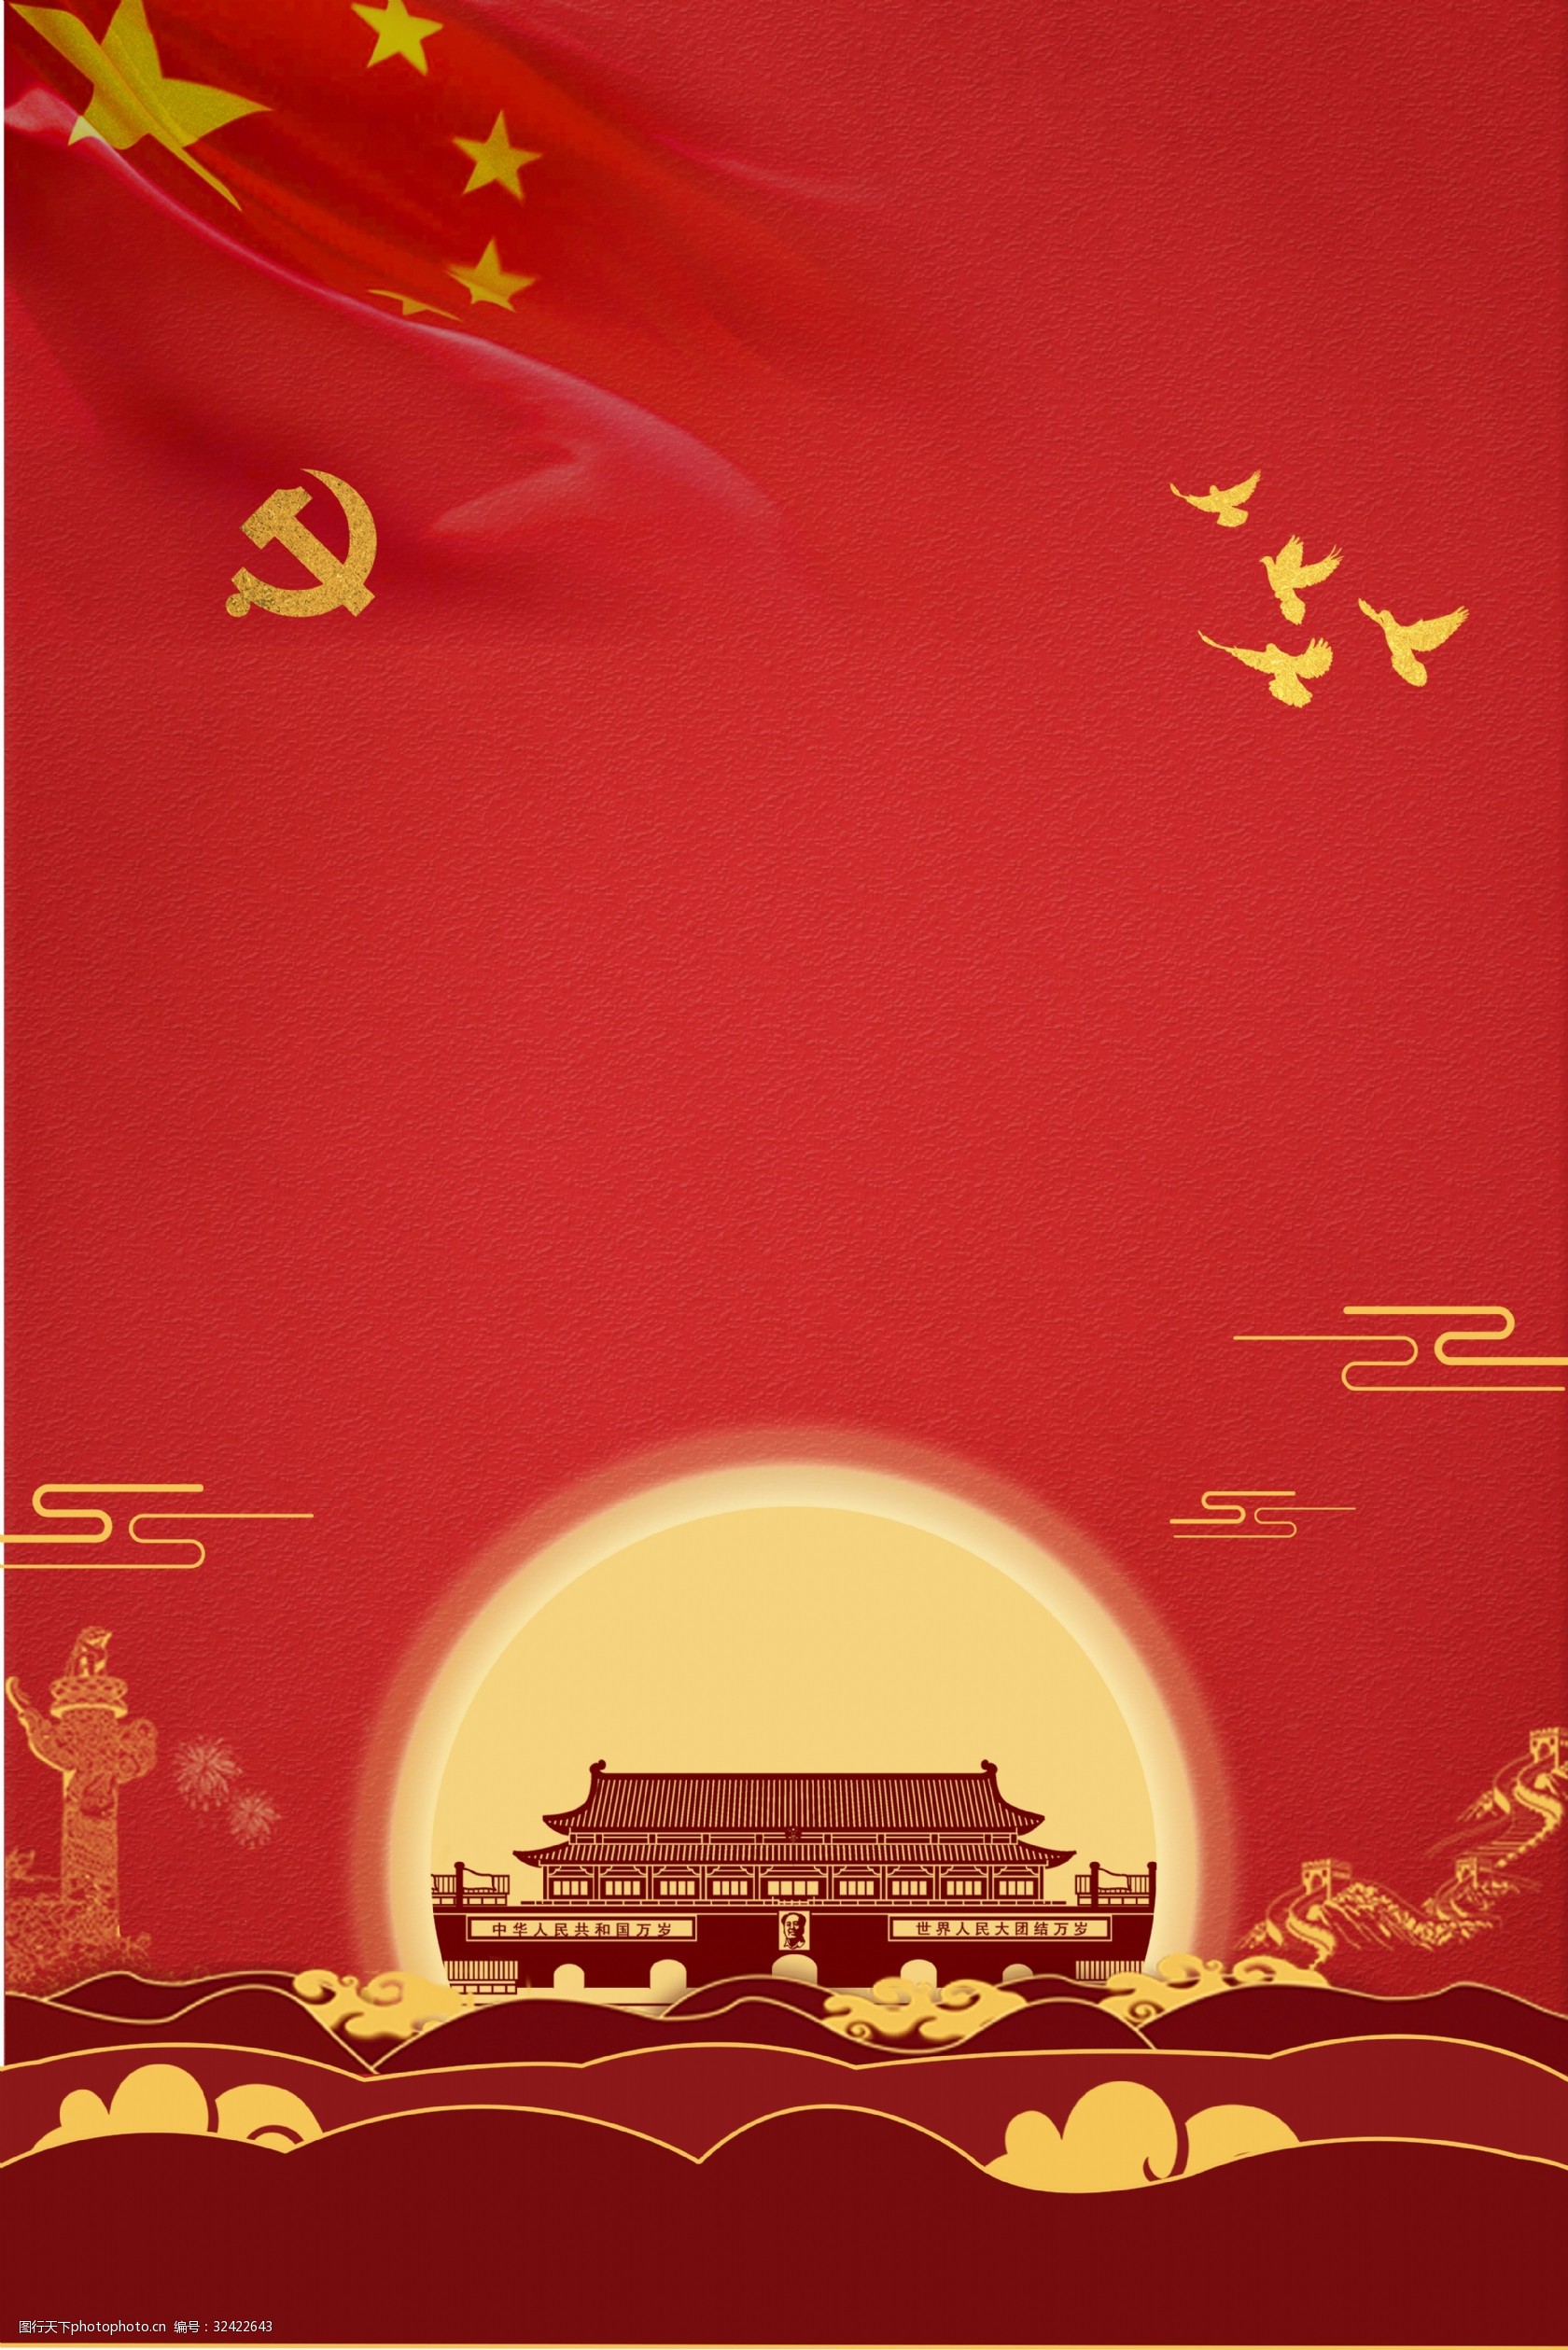 红色两会通用背景素材 两会 人民代表大会 建筑 广告背景 红色 中国风